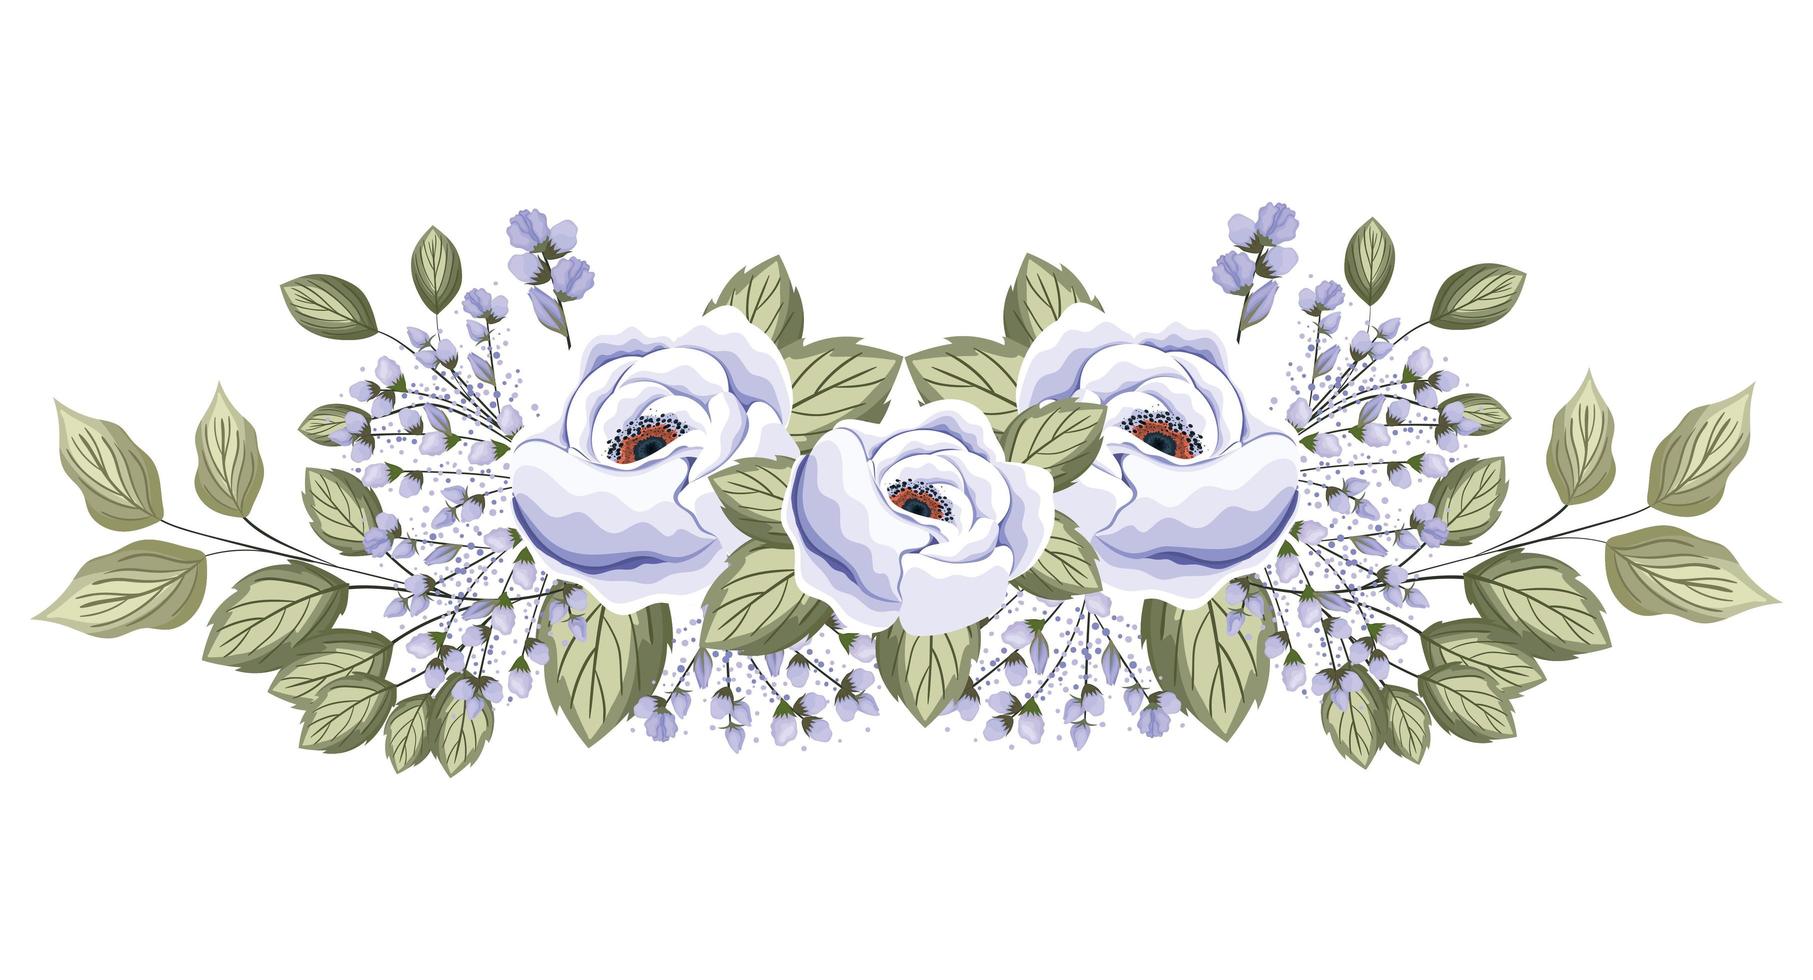 witte rozen bloemen met knoppen en bladeren schilderen vector